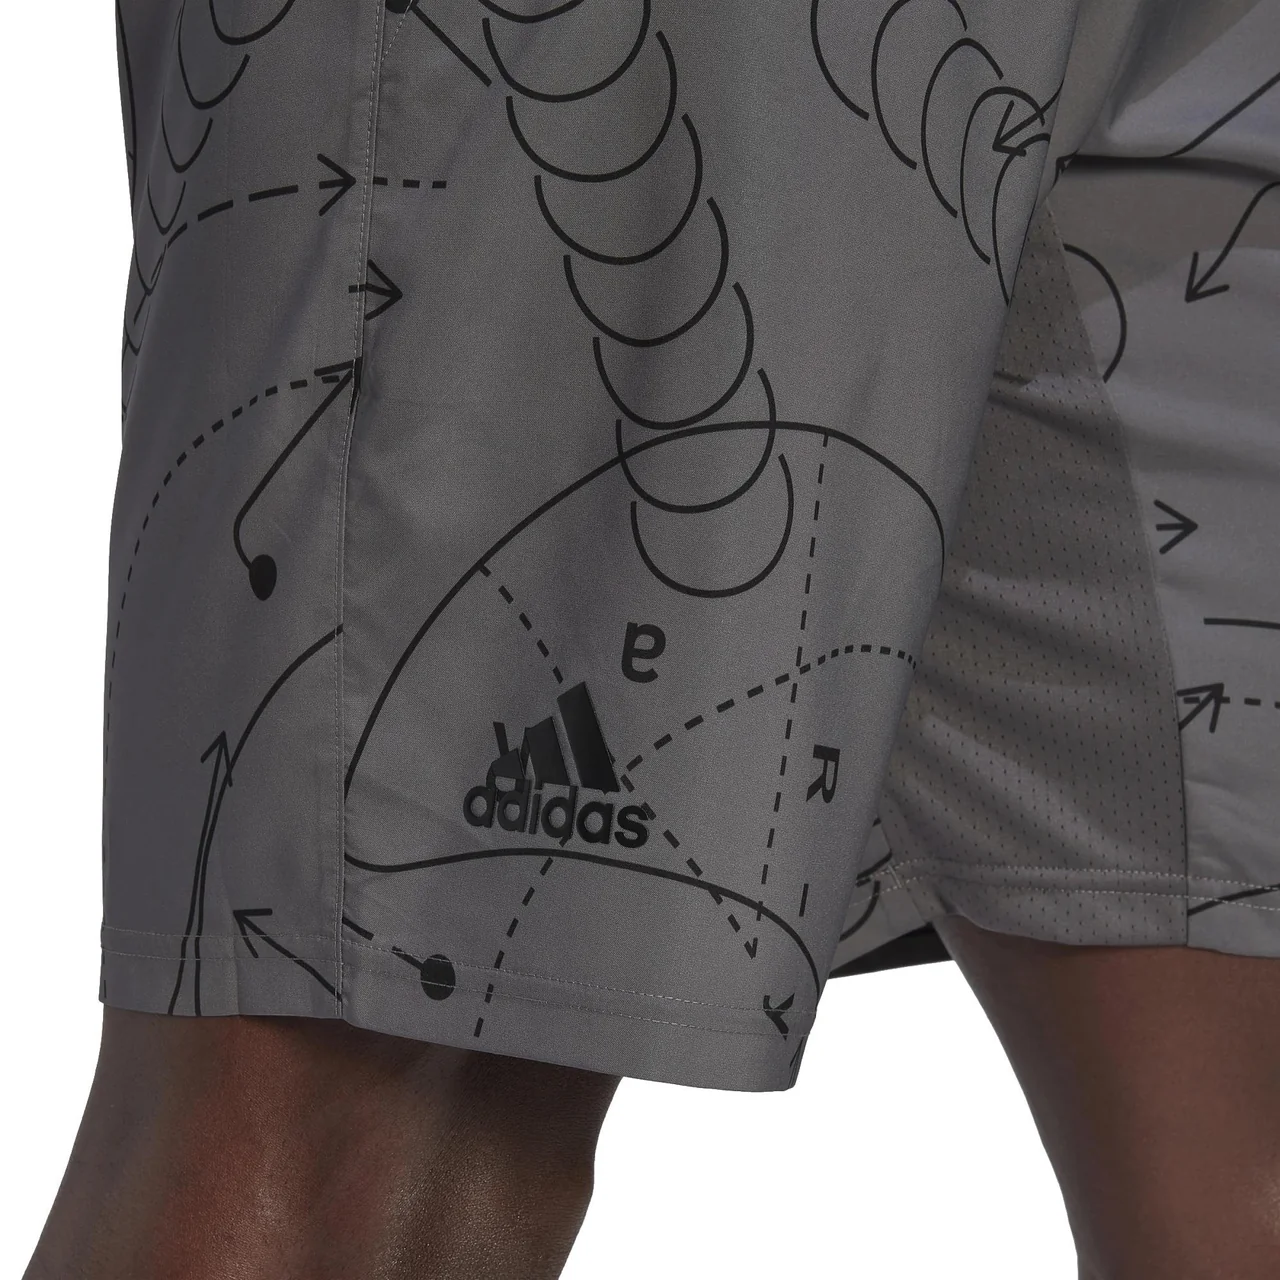 Adidas Club Graphic Shorts Men Grey Four